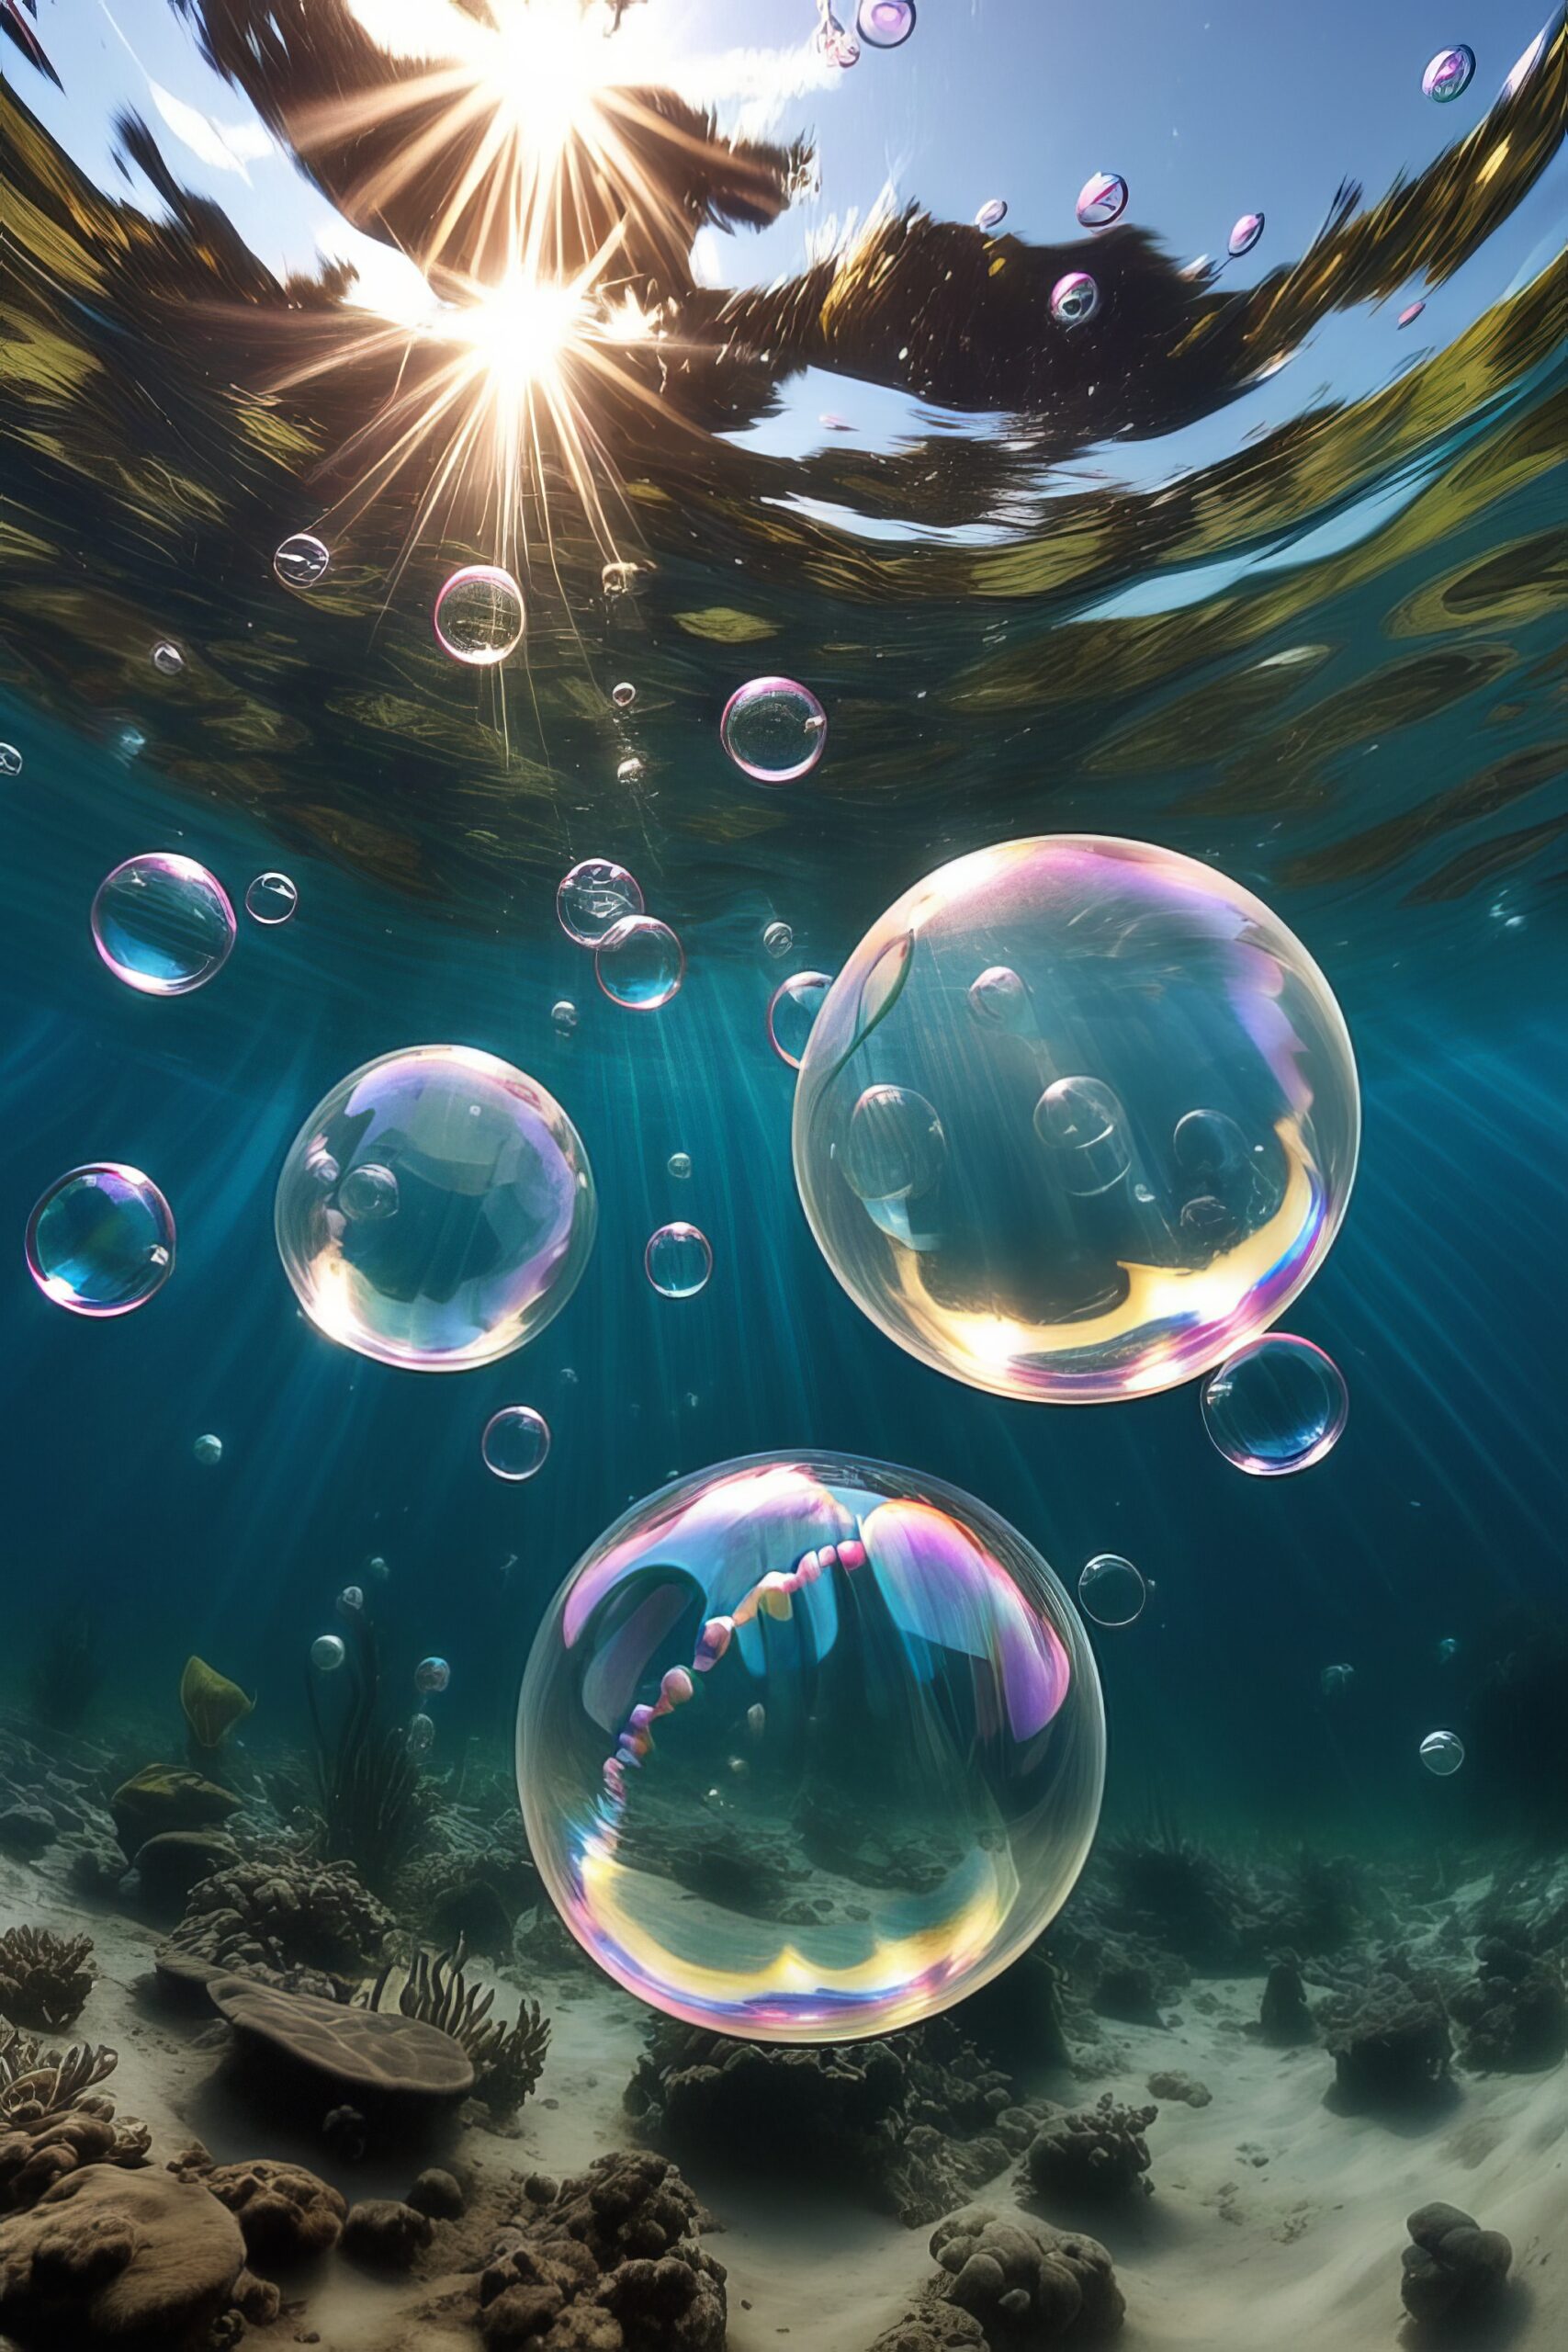 綺麗に舞う海中の泡と虹色に輝くシャボン玉と太陽光の無料写真風スマホ壁紙素材